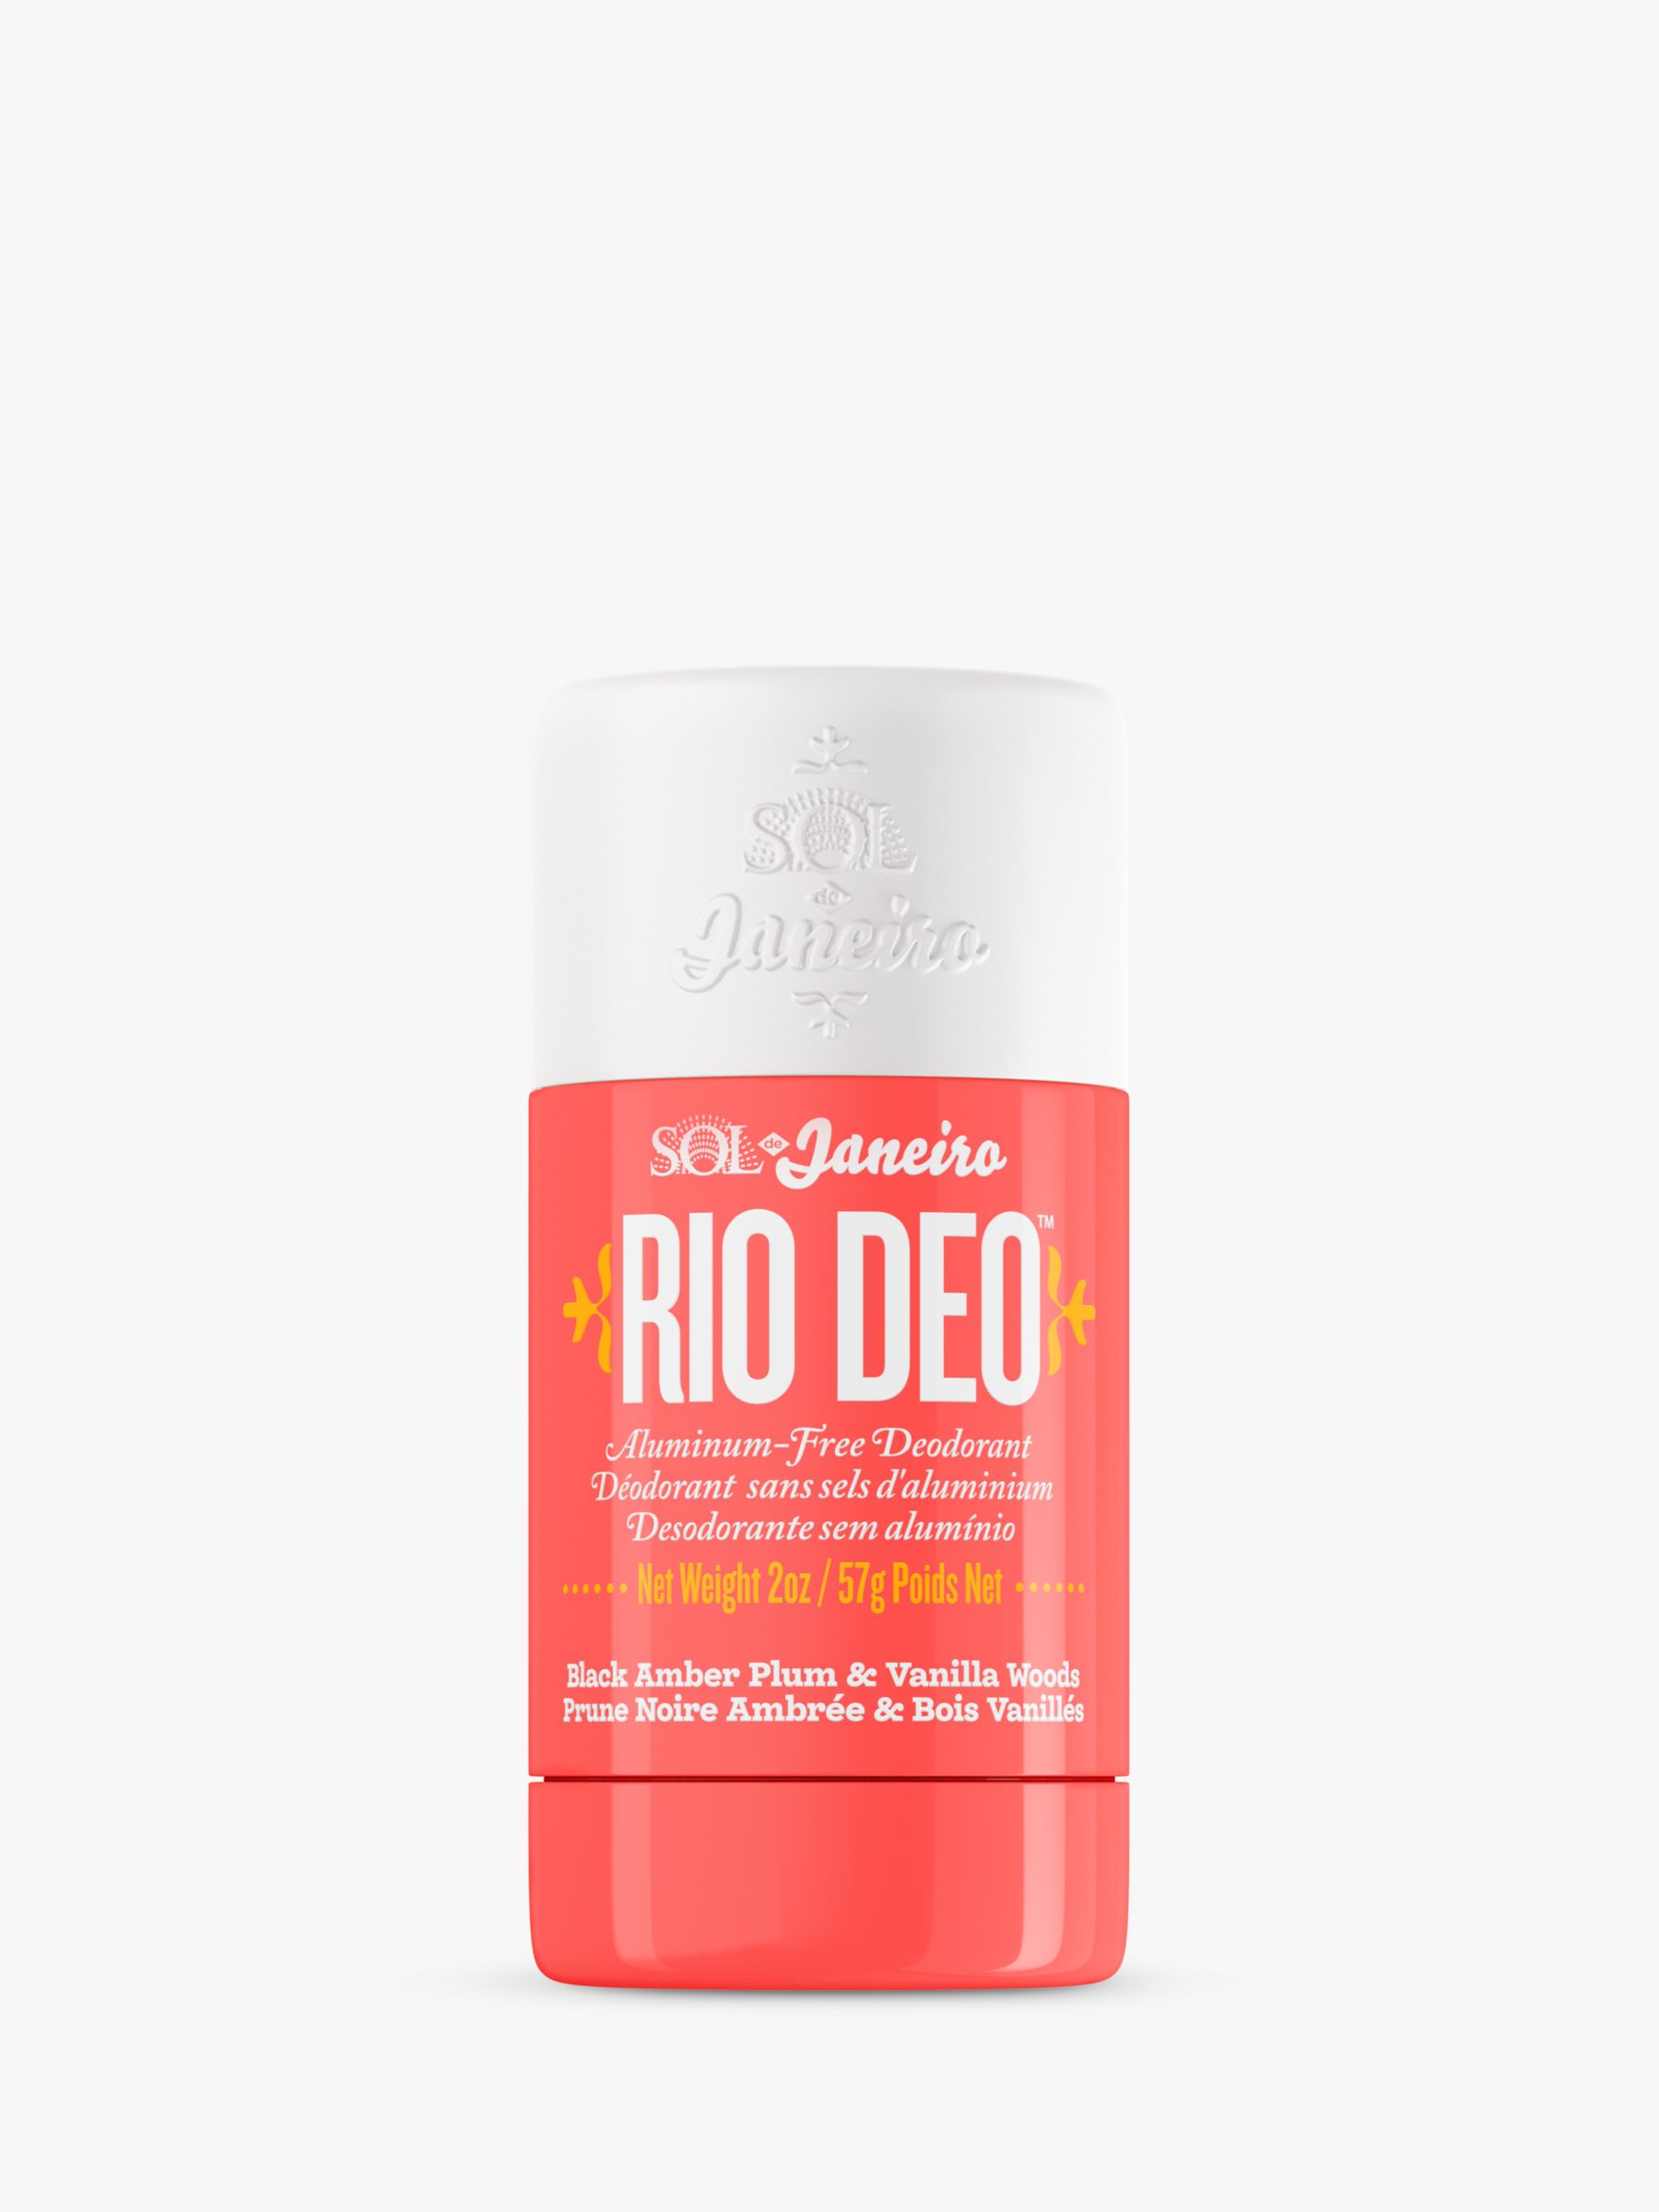 Sol De Janeiro Rio Deo Aluminum-Free Deodorant Cheirosa 40, 57g